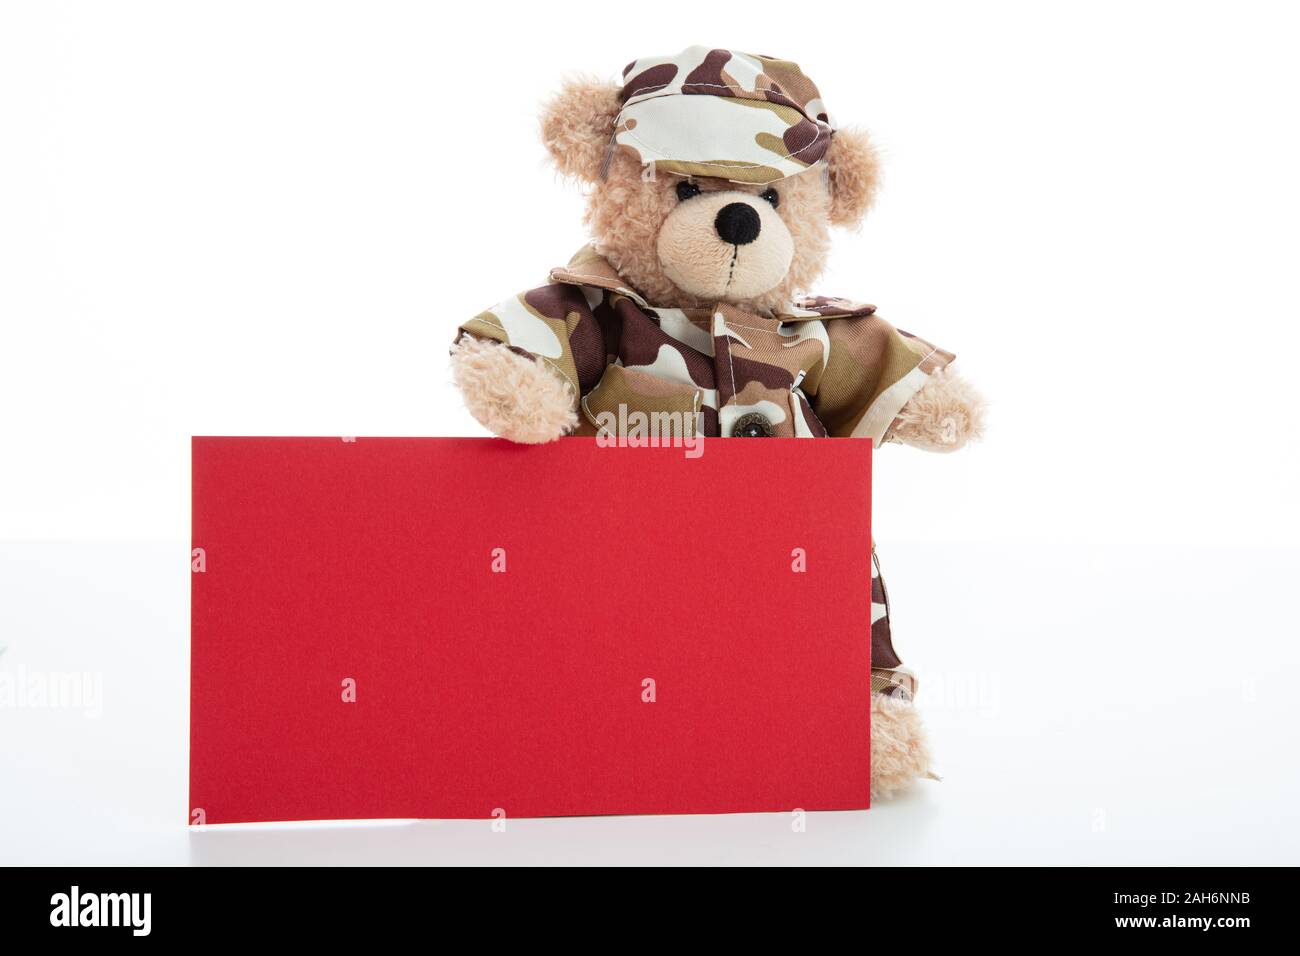 Armee, militärisches Konzept. Niedlichen Teddybären in Soldat einheitliche Holding eine leere Rote Karte vor weißem Hintergrund, kopieren Raum Stockfoto